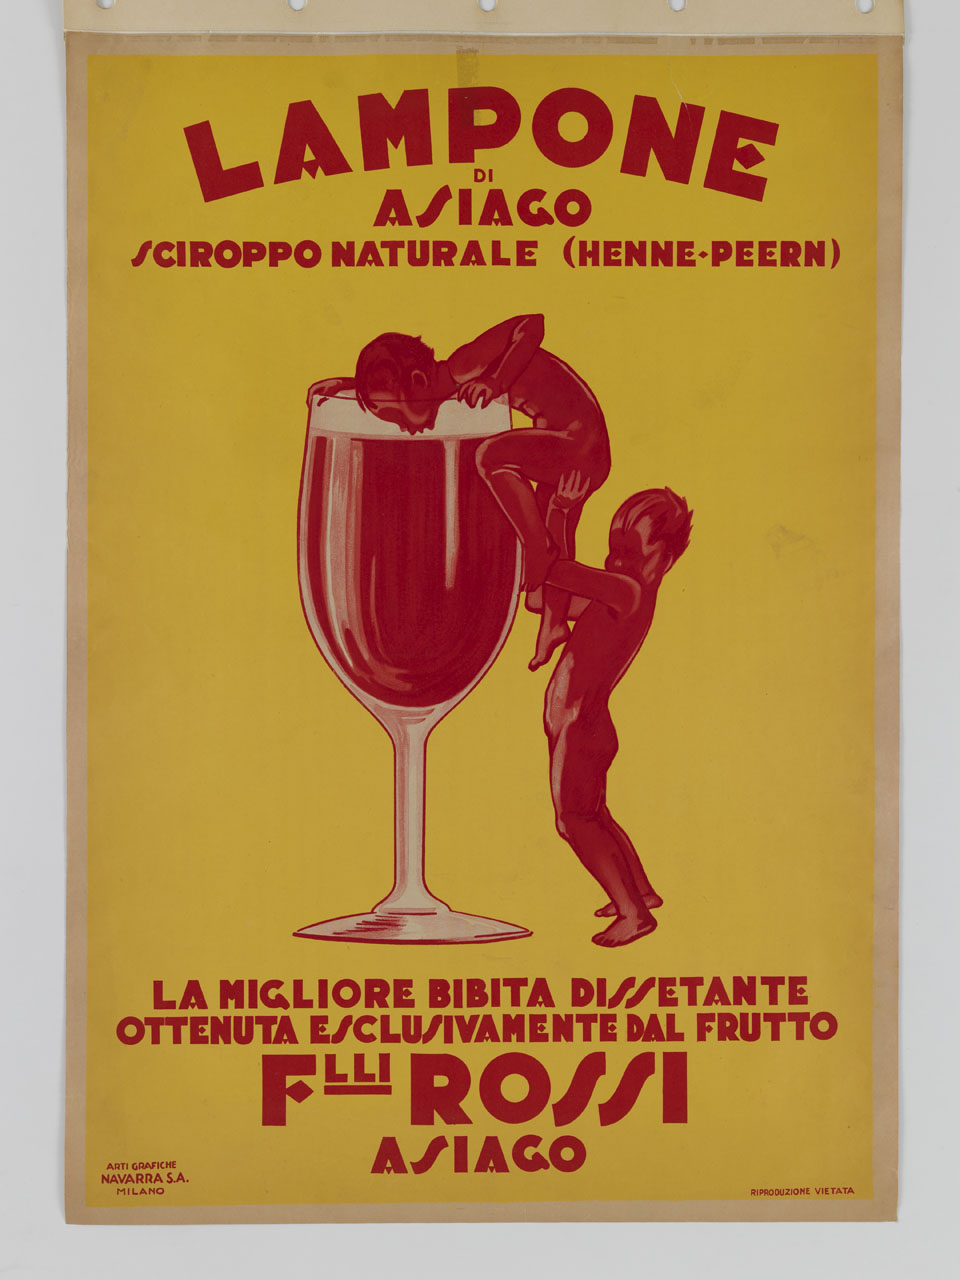 raffigurazione di due bambini nudi di colore rosso che cercano di entrare in un bicchiere gigante contenente una bevanda dello stesso colore (manifesto) - ambito italiano (sec. XX)